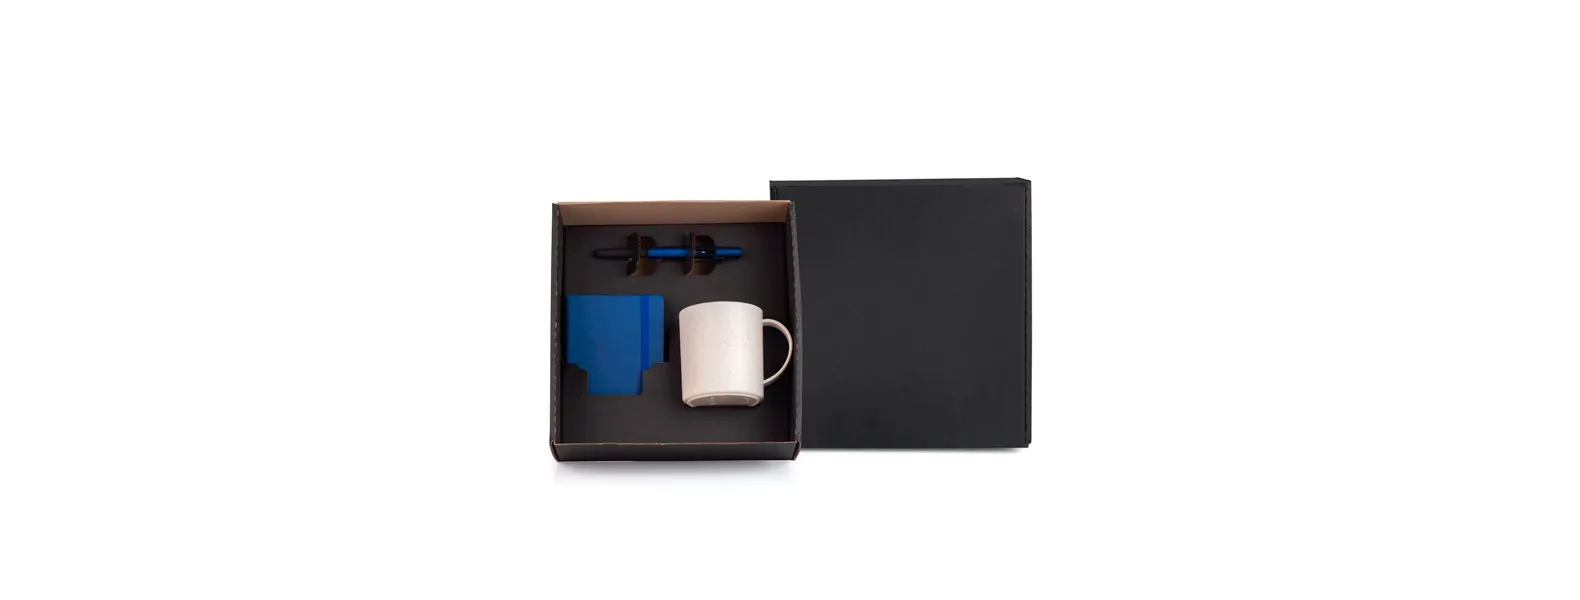 Kit composto por caneca em fibra de bambu/PP; caderno para anotações azul com capa dura e caneta esferográfica em ABS azul.